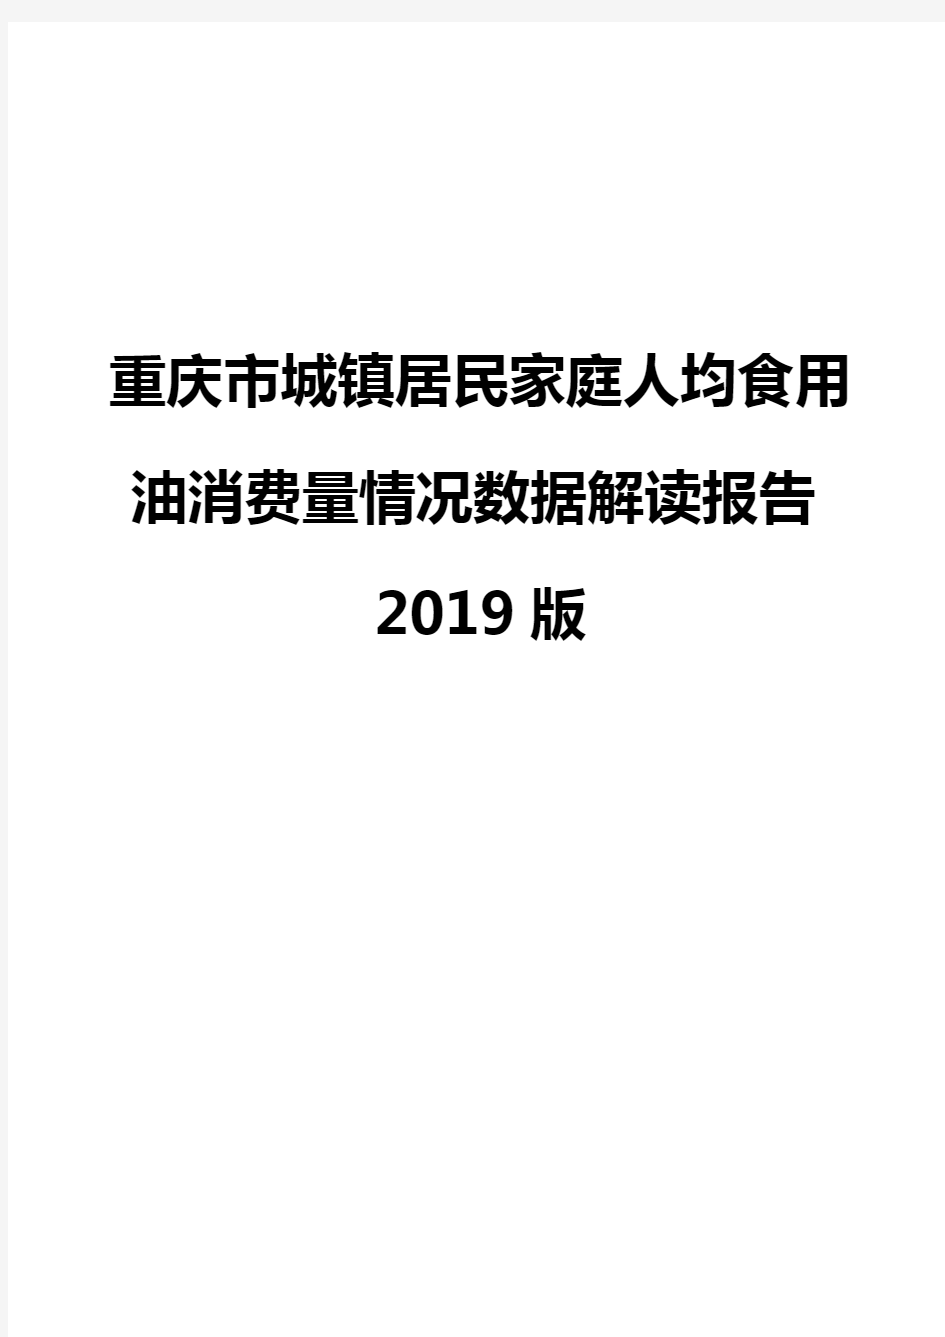 重庆市城镇居民家庭人均食用油消费量情况数据解读报告2019版